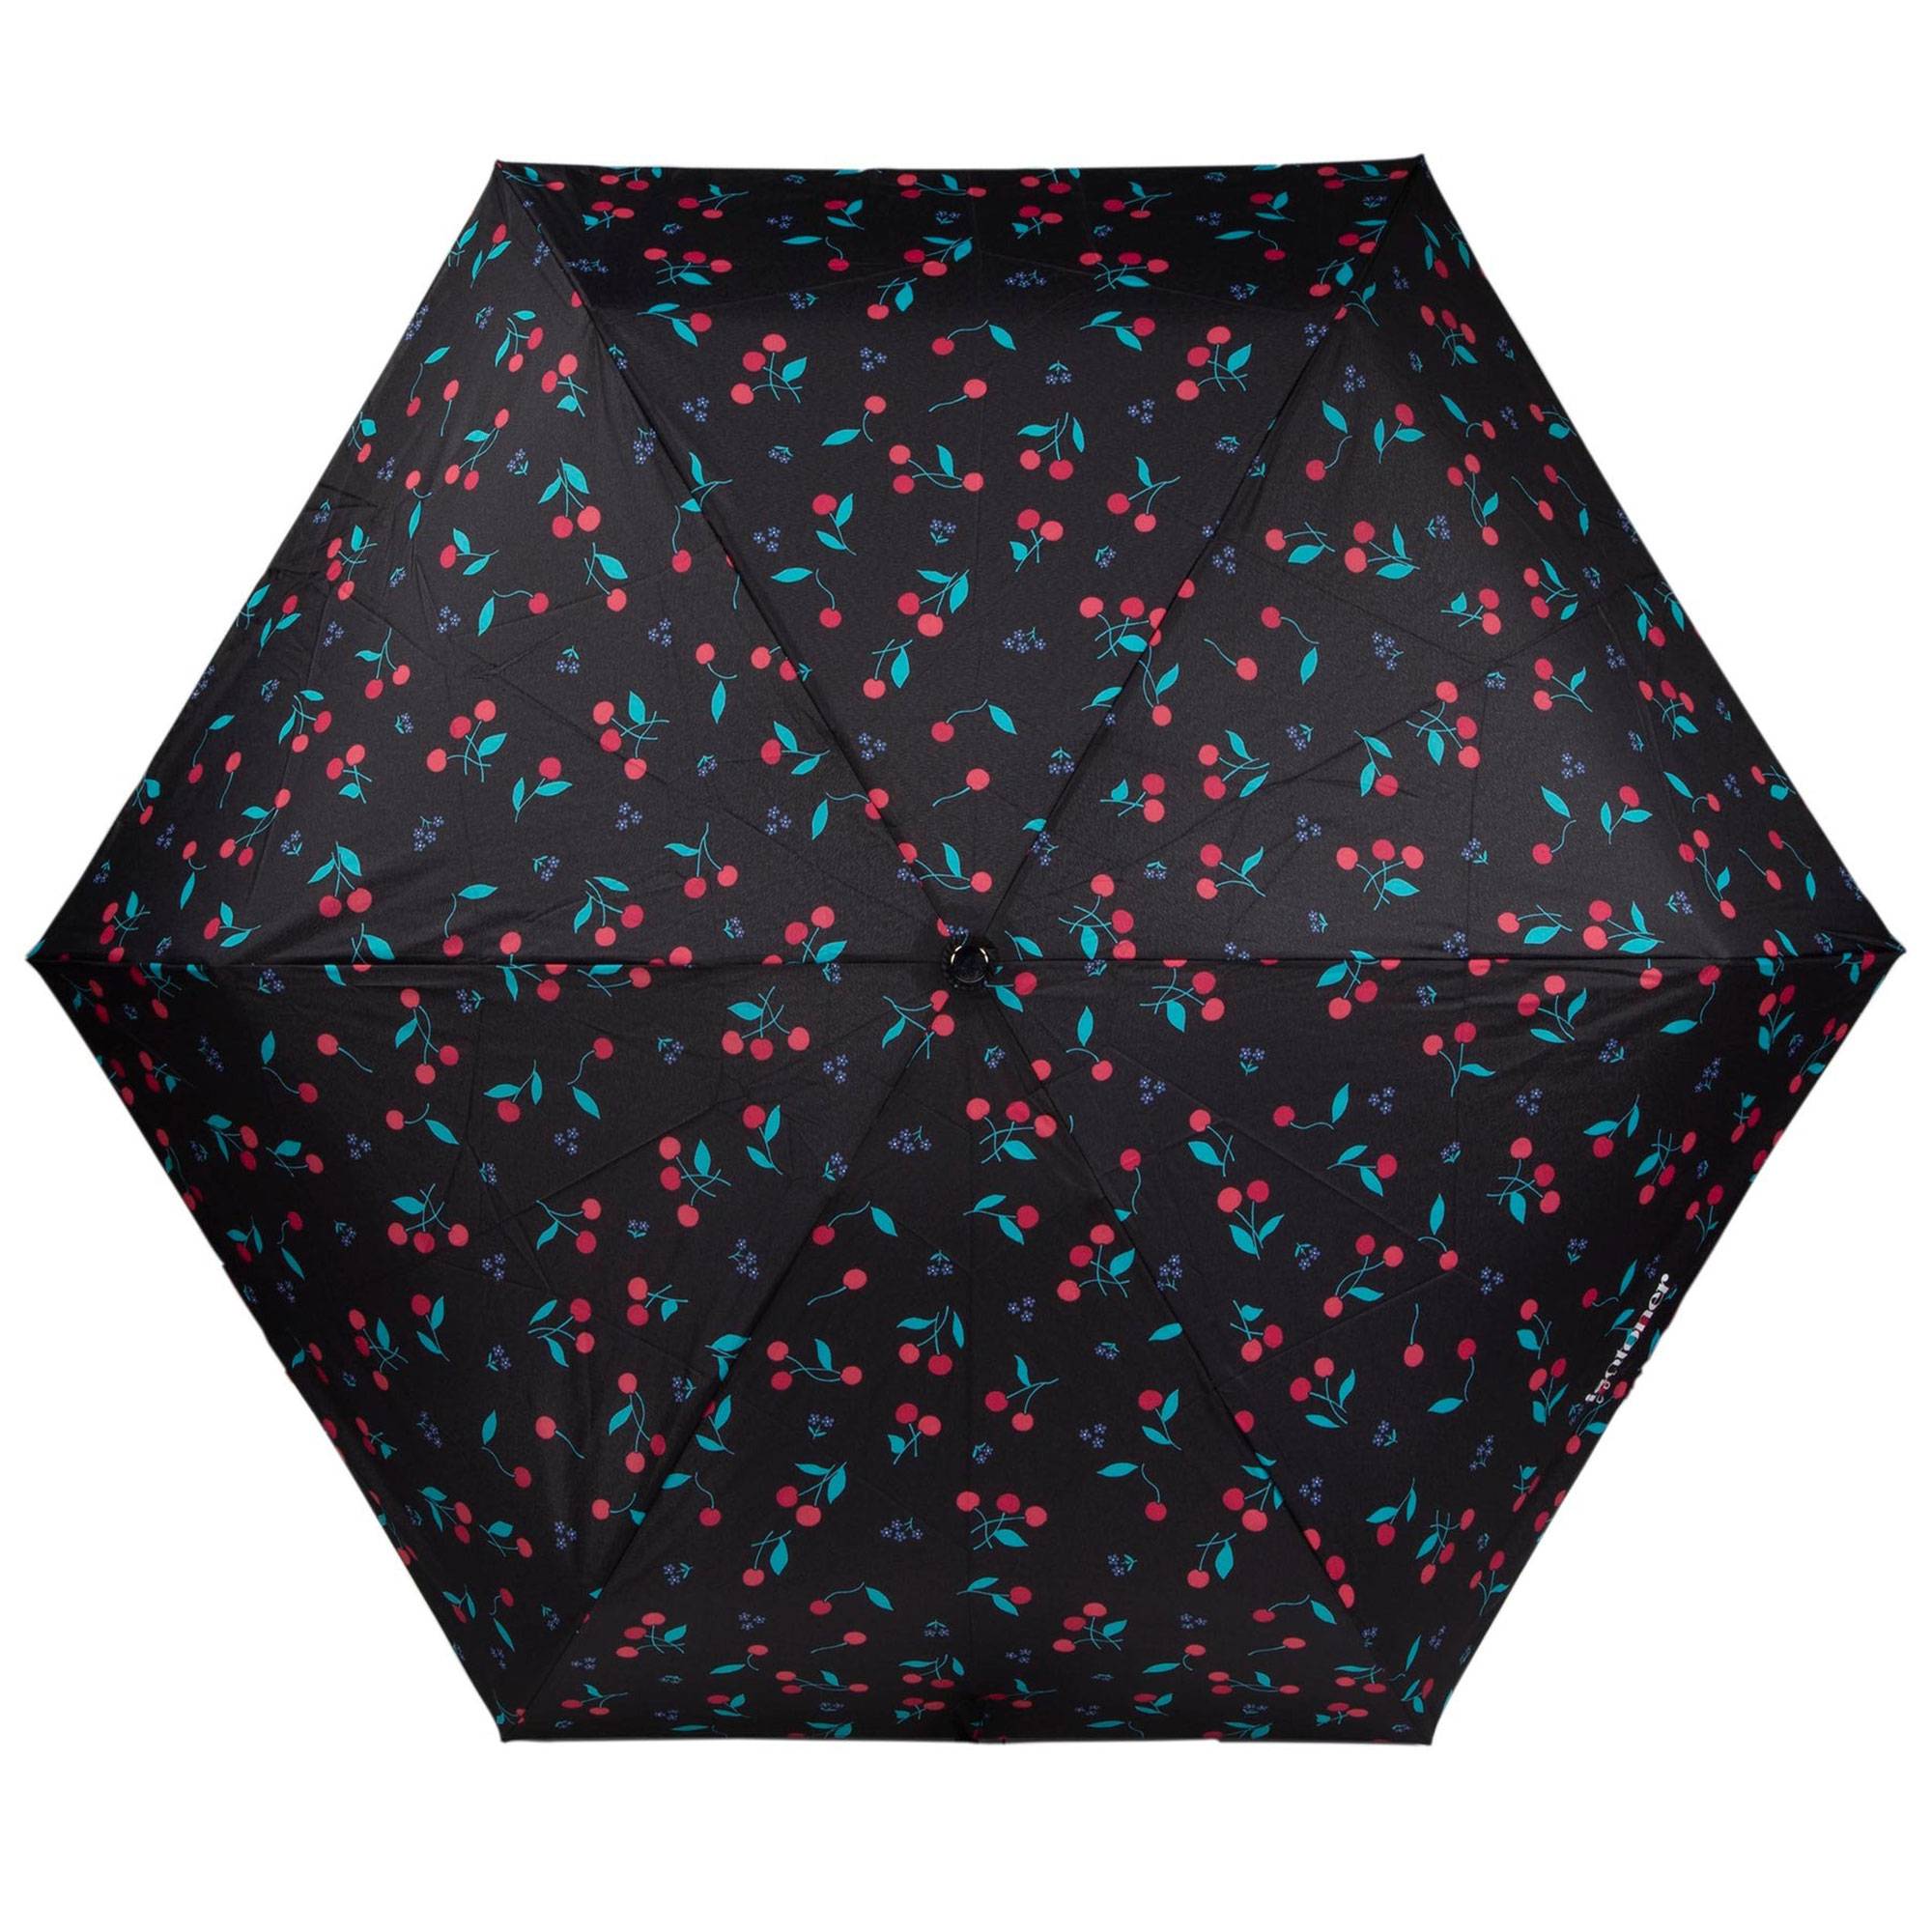 Mini parapluie ouverture automatique Isotoner 09145 DCP couleur Pois Cerise Rose face